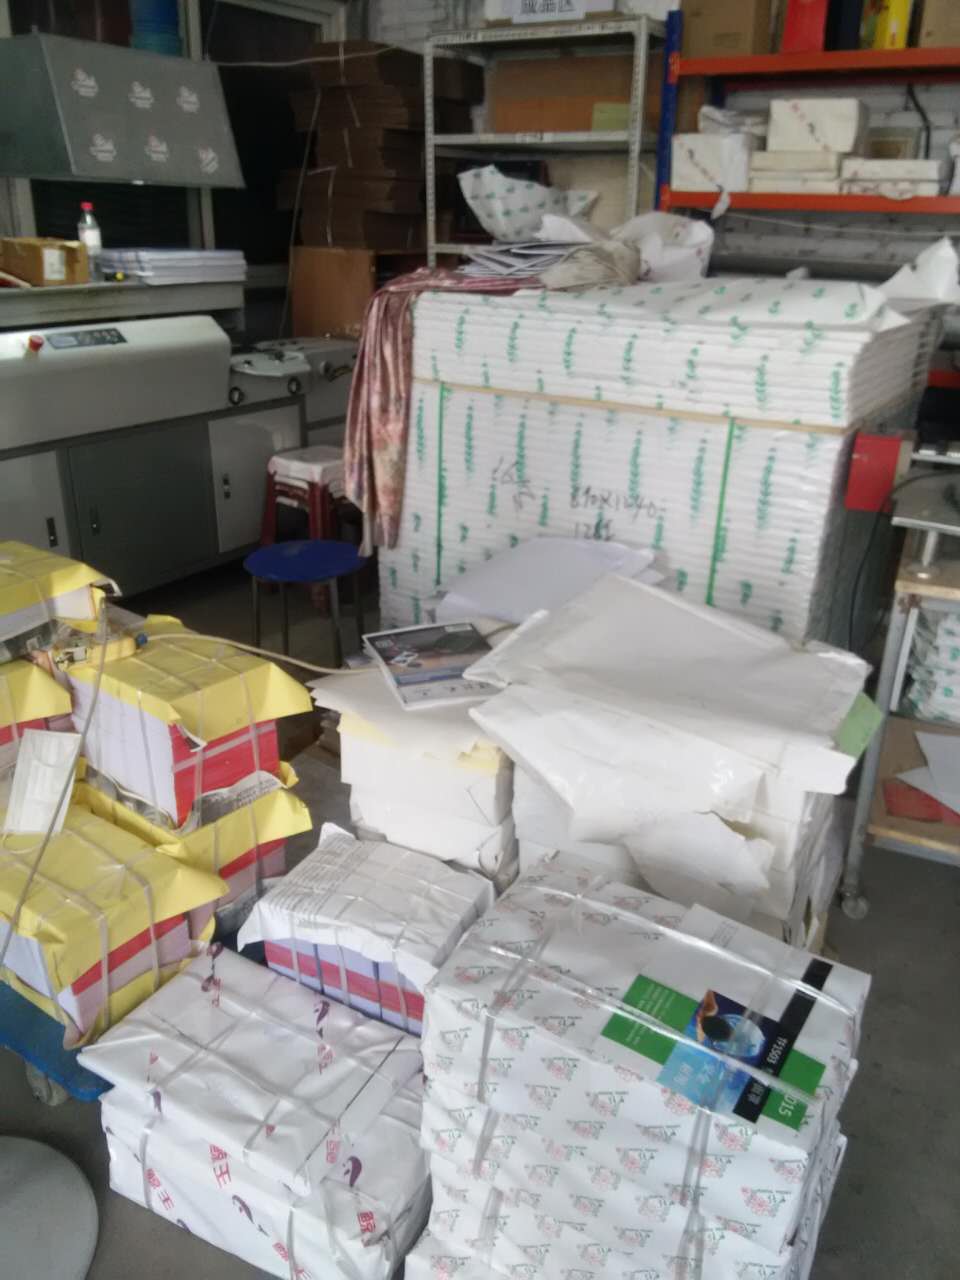 唐山陶瓷店有多少做印刷去哪个印刷公司